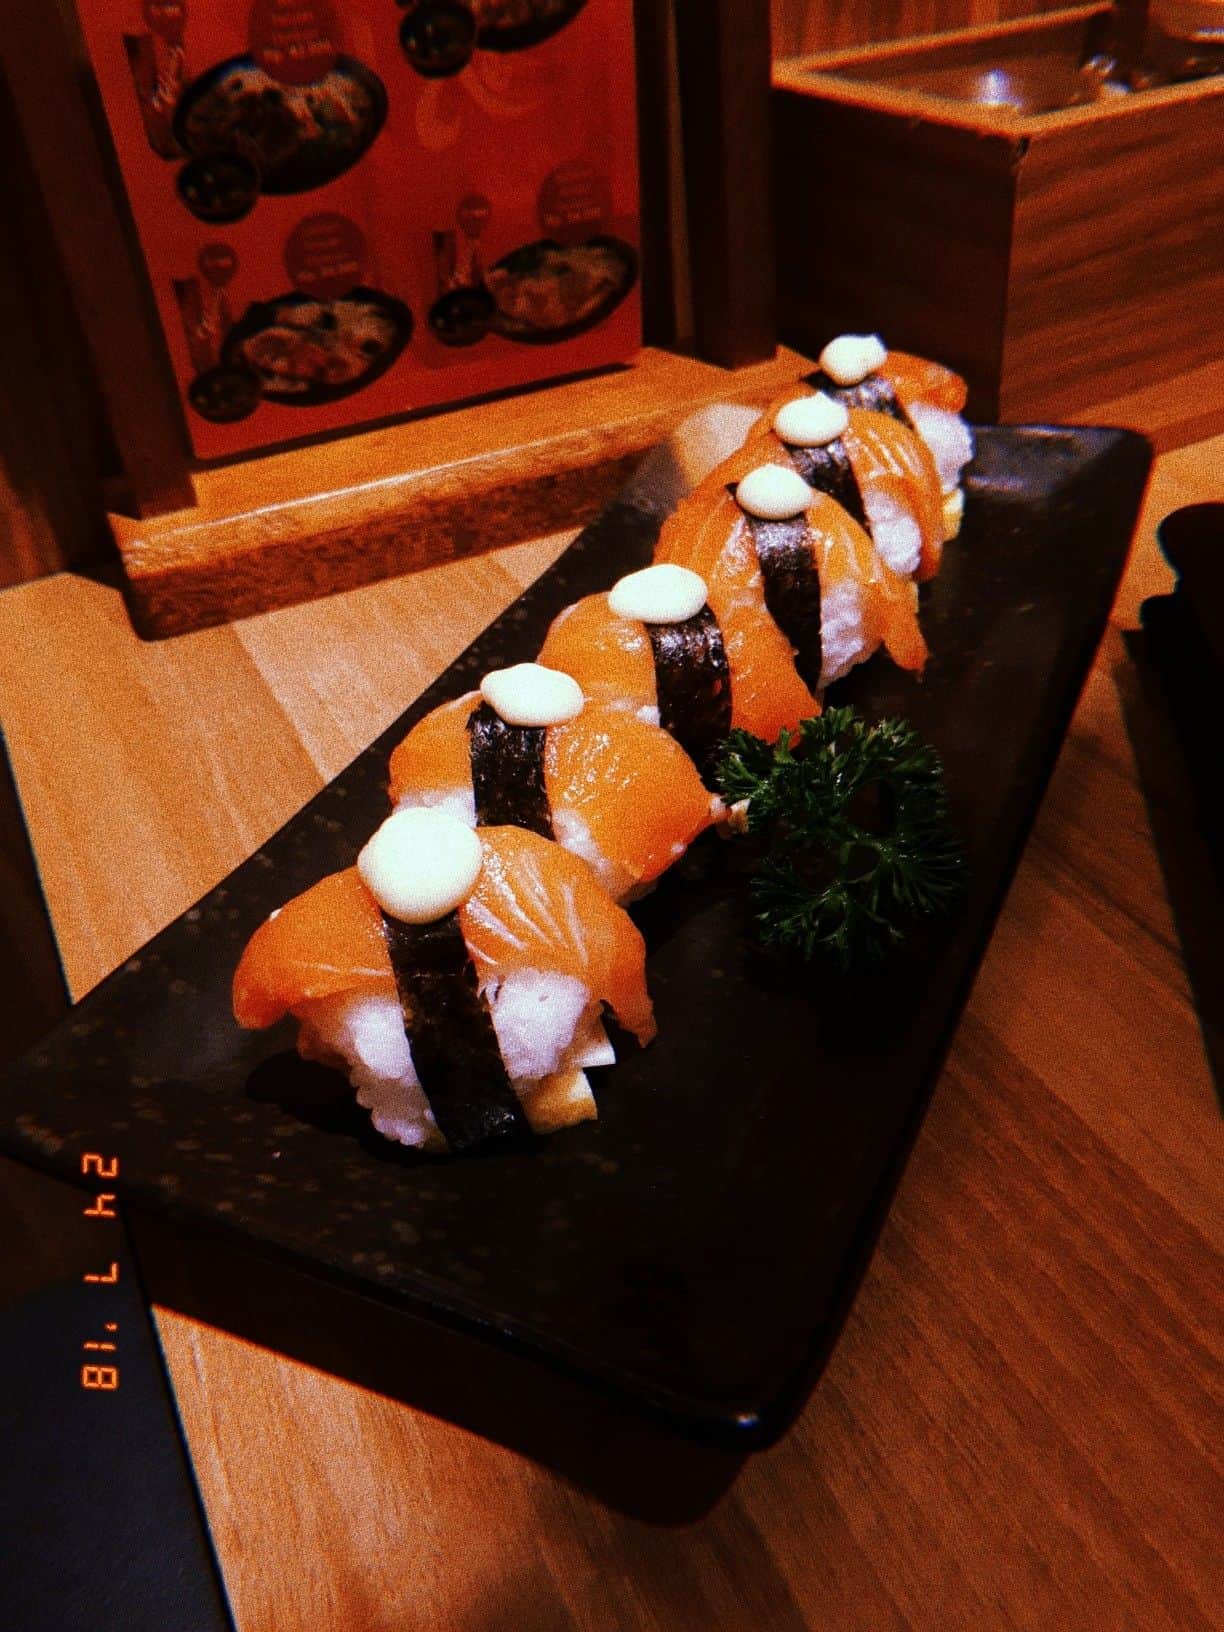 ichiban sushi